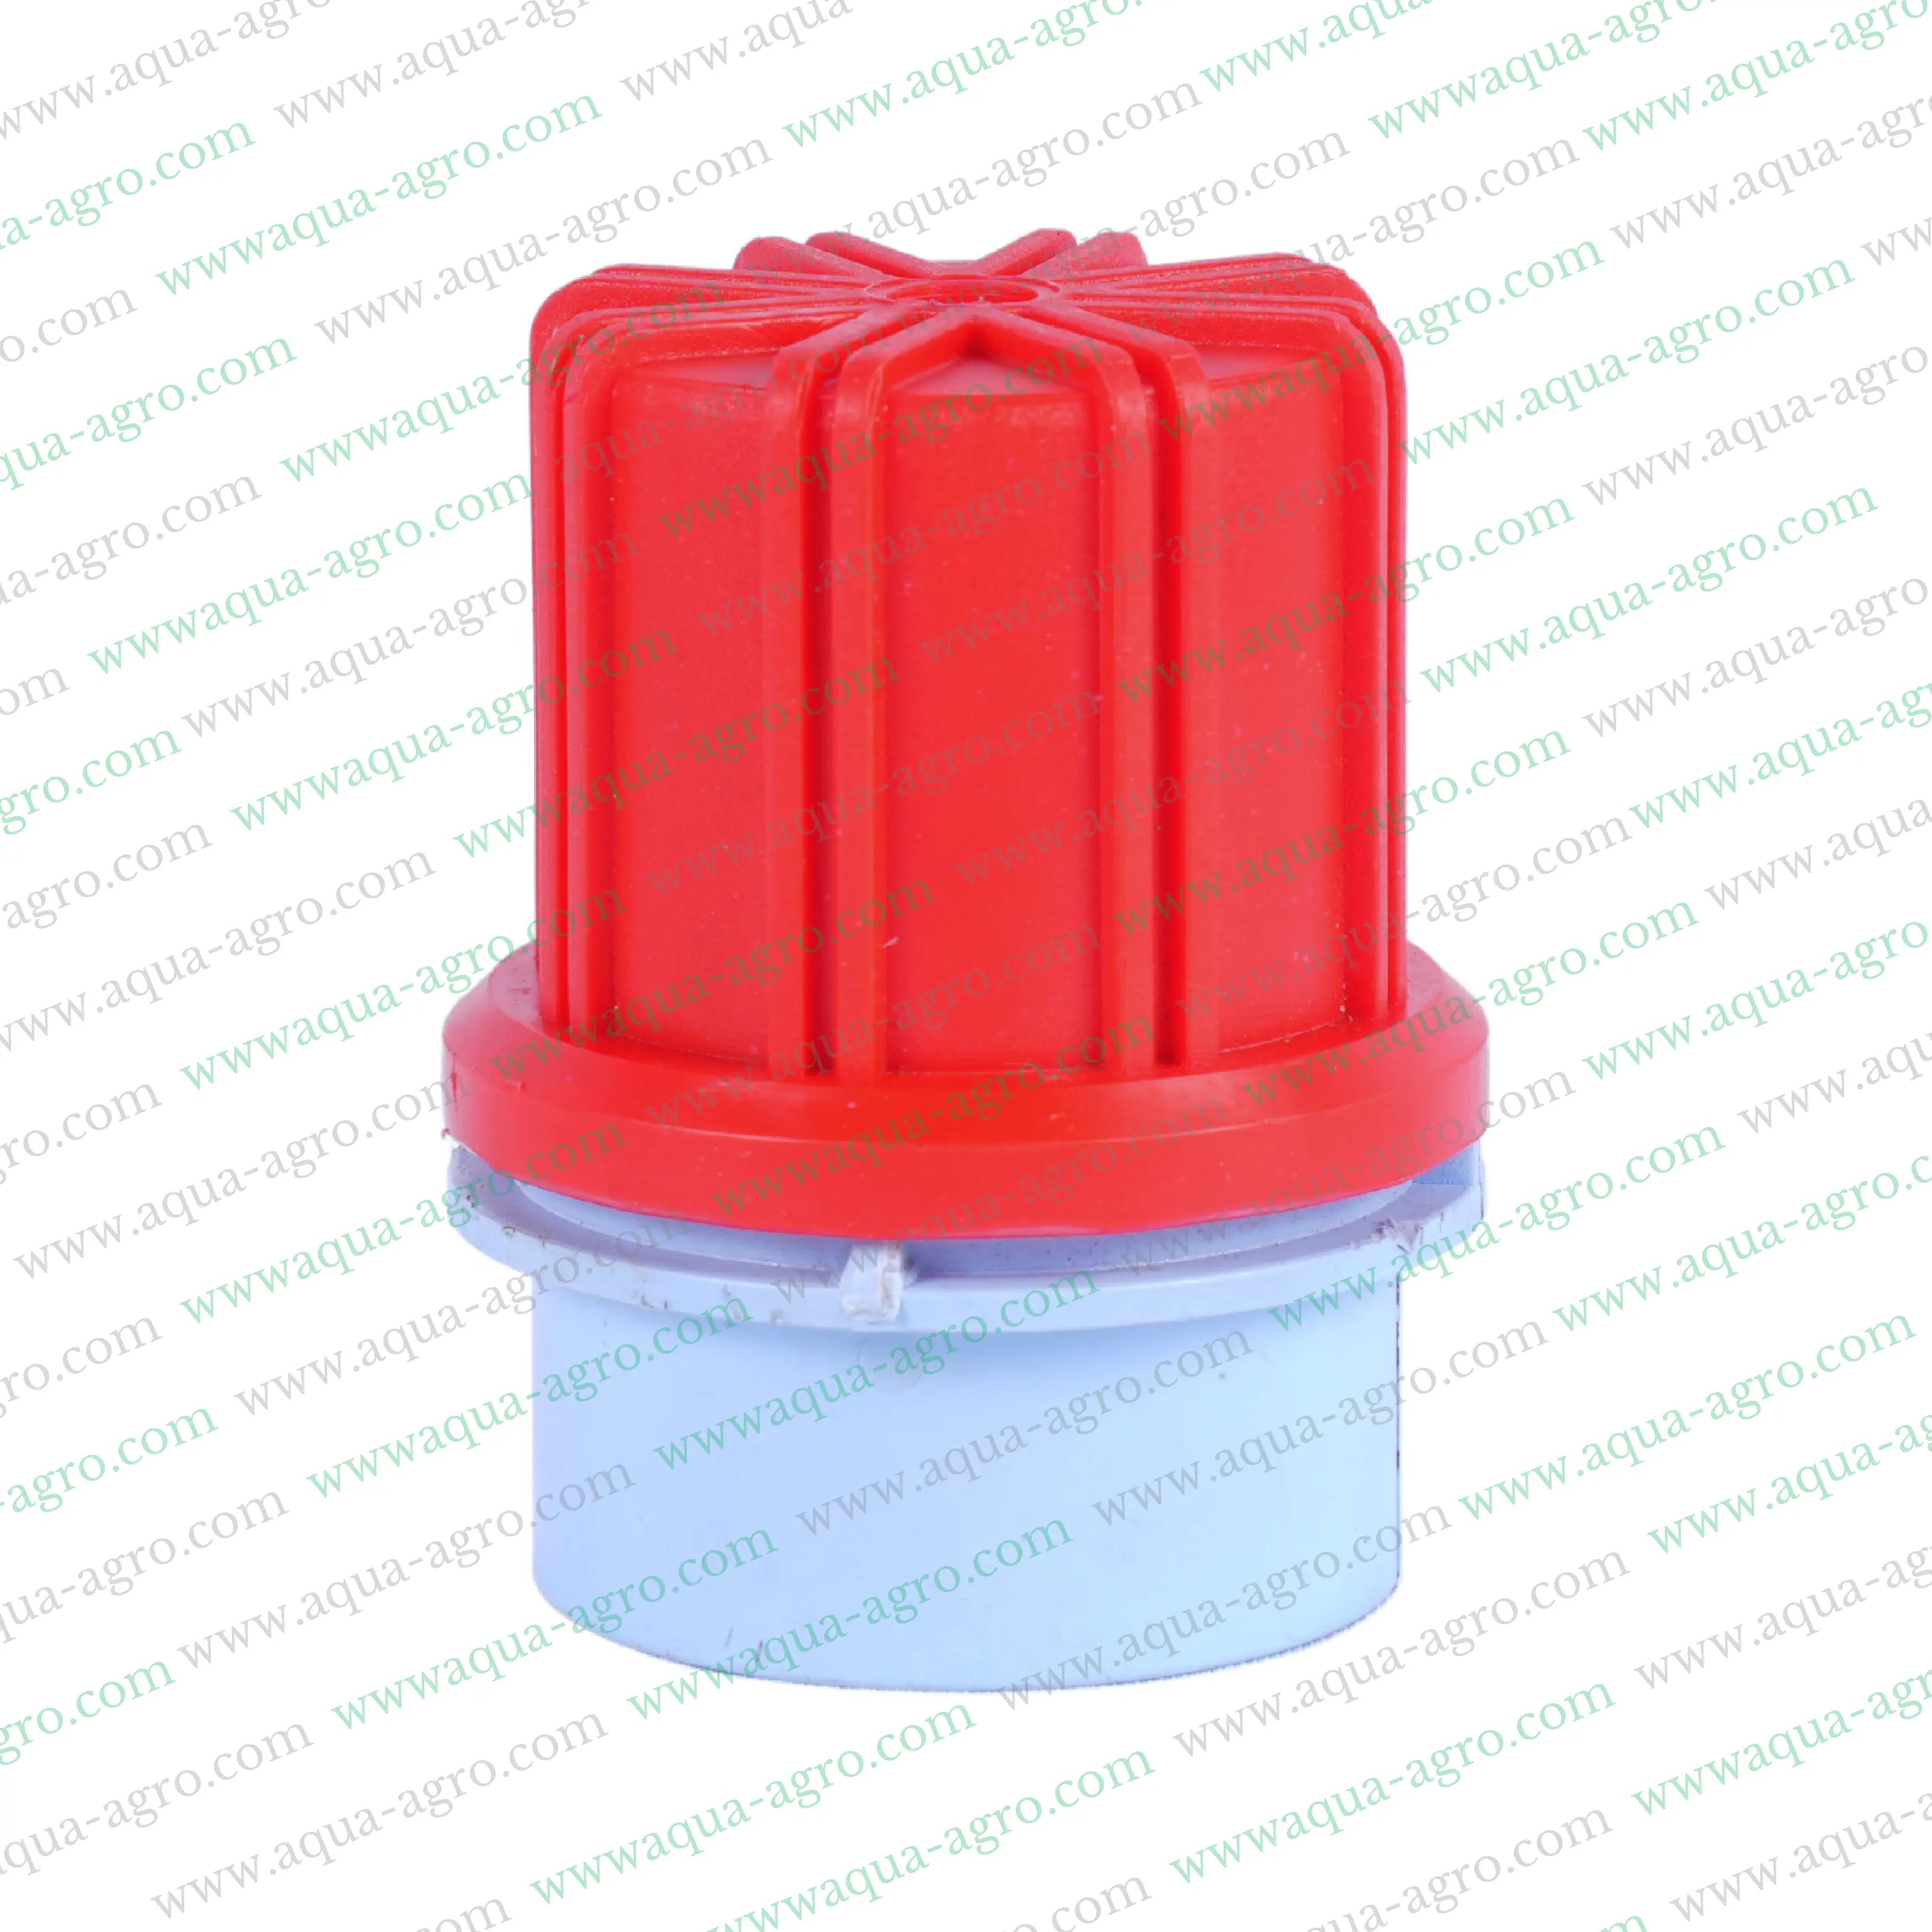 RAVANDS | Flush Valve - Manual Operation - Plastic (PVC) - Plain socket (pasting type) - 1.25" (40mm)